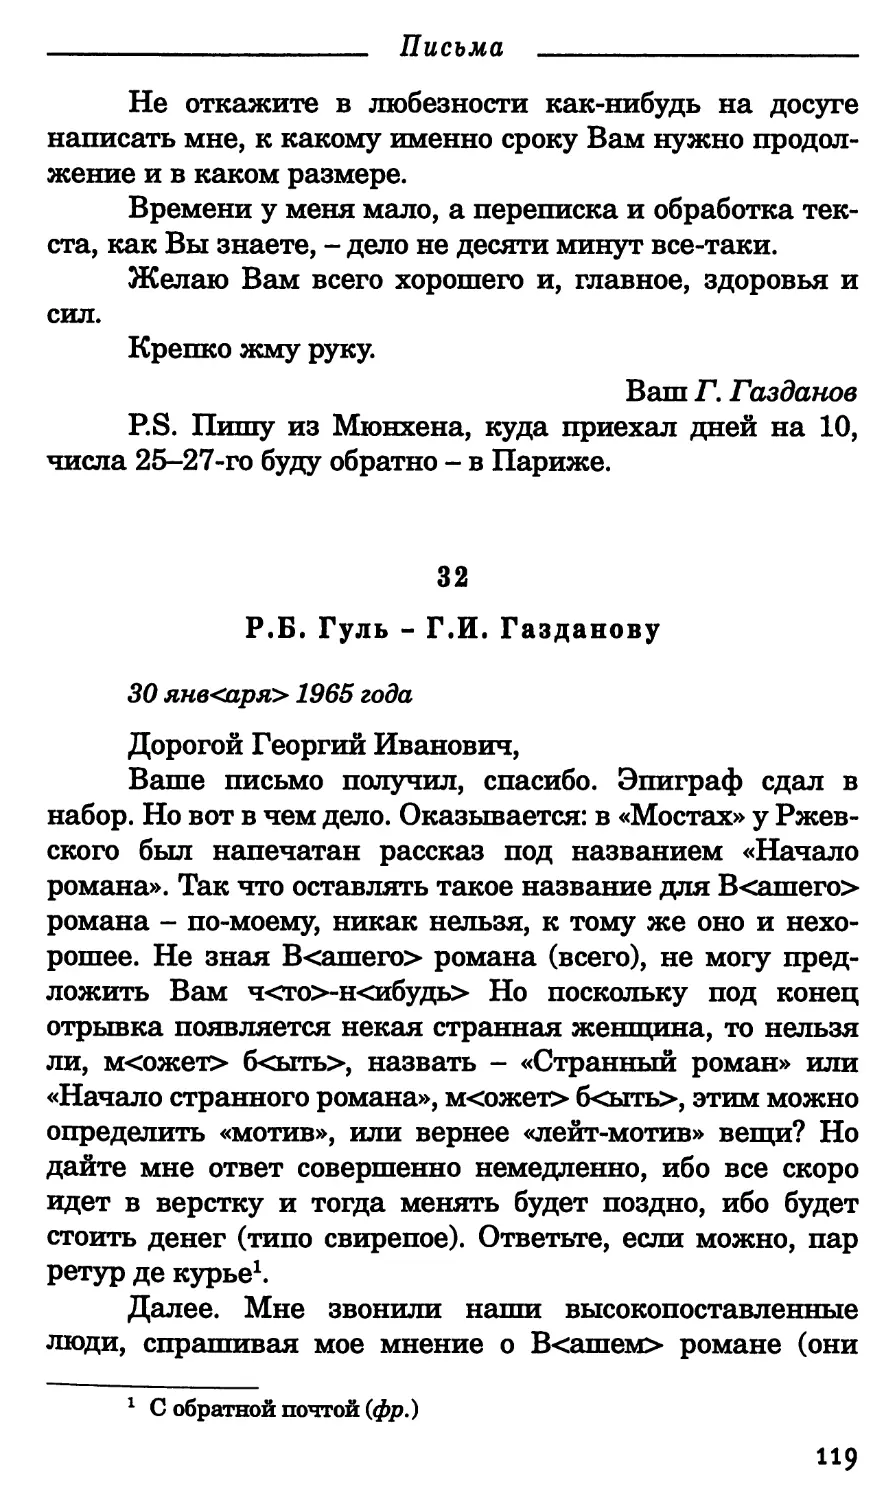 32. Р.Б. Гуль - Г.И. Газданову. 30 января 1965 г.